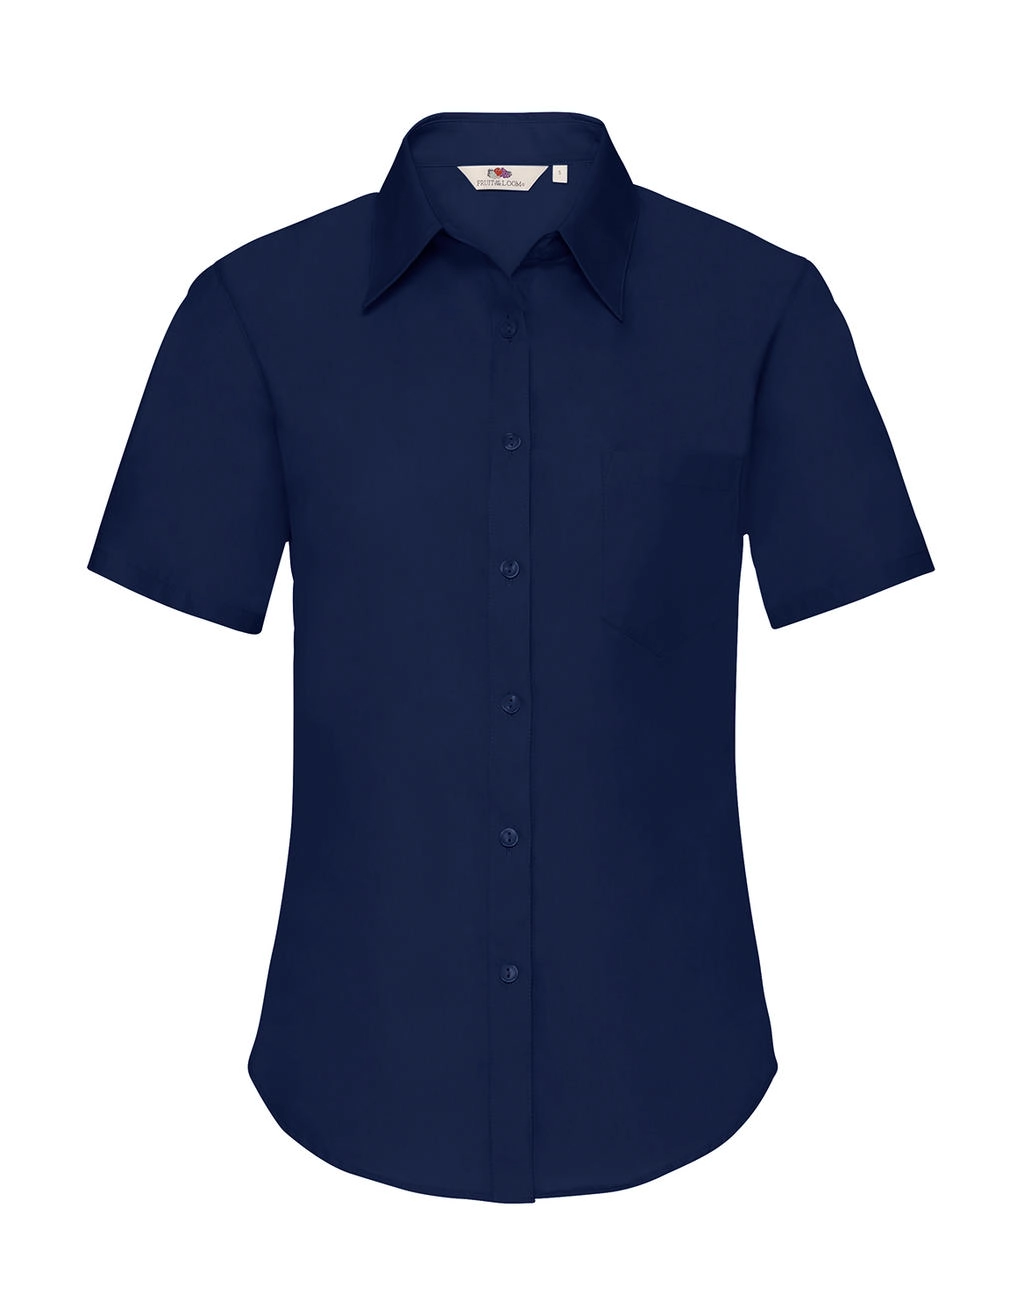 Ladies` Poplin Shirt zum Besticken und Bedrucken in der Farbe Navy mit Ihren Logo, Schriftzug oder Motiv.